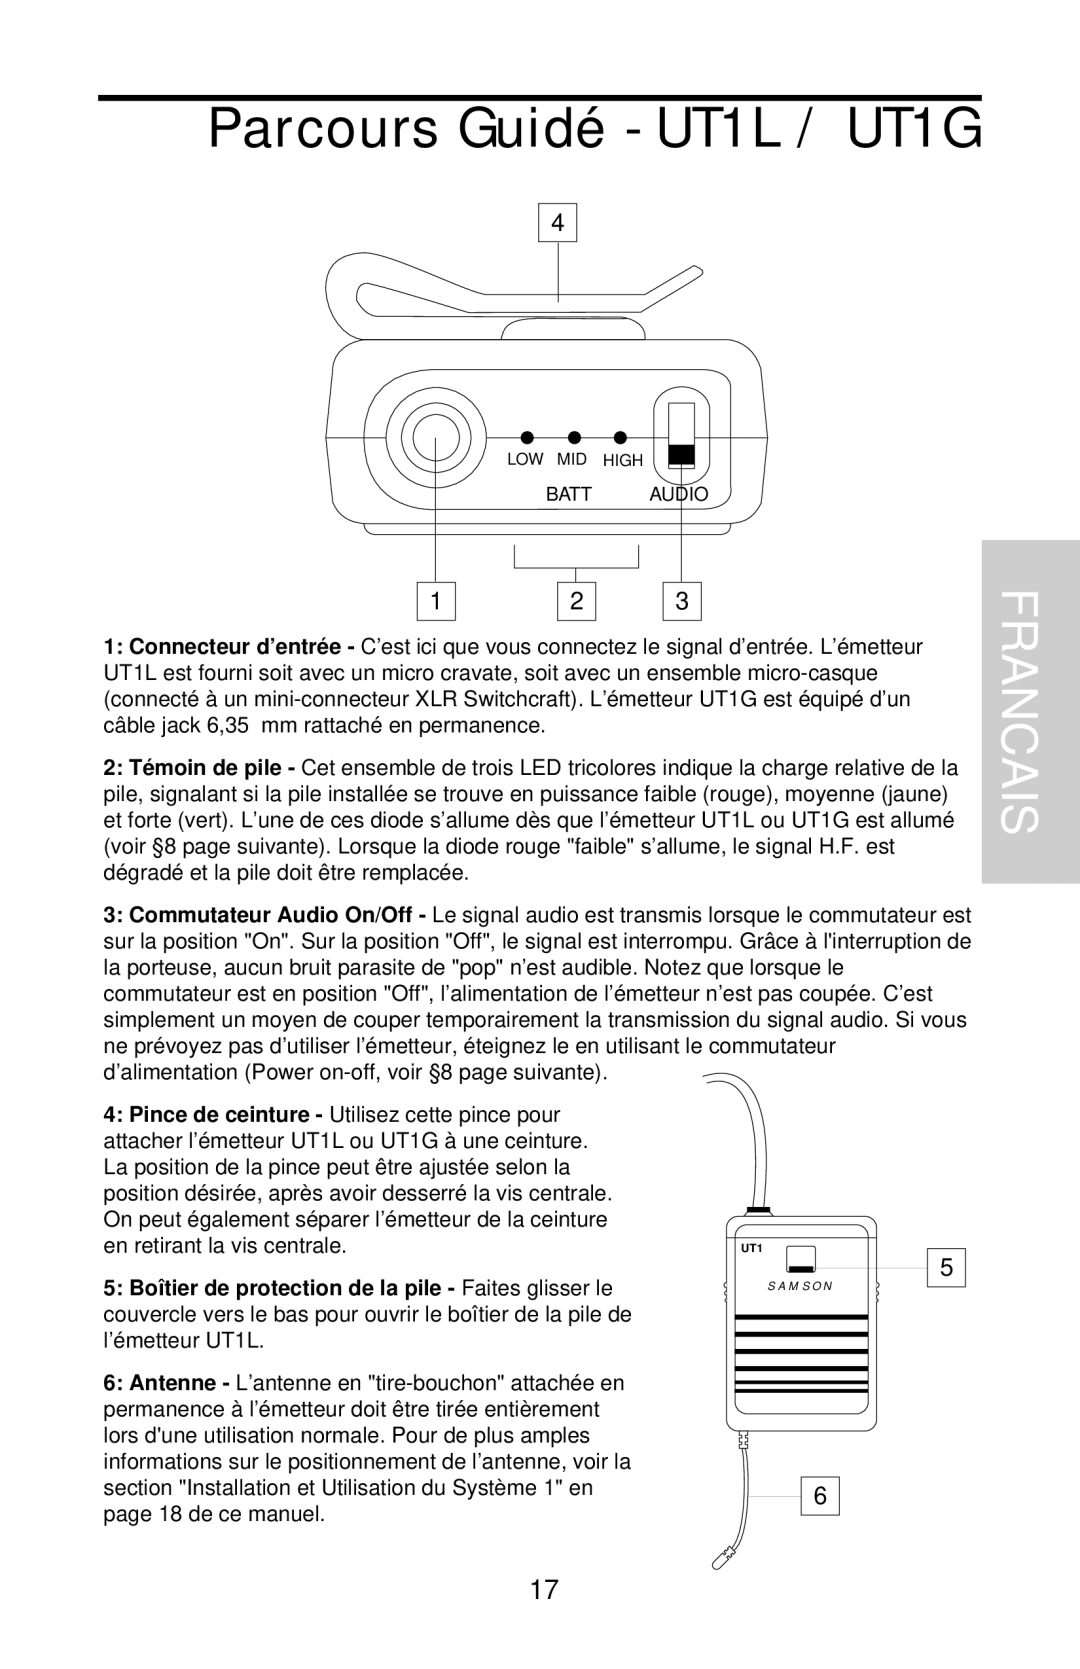 Samson UHF 801 owner manual Parcours Guidé - UT1L / UT1G, Francais 